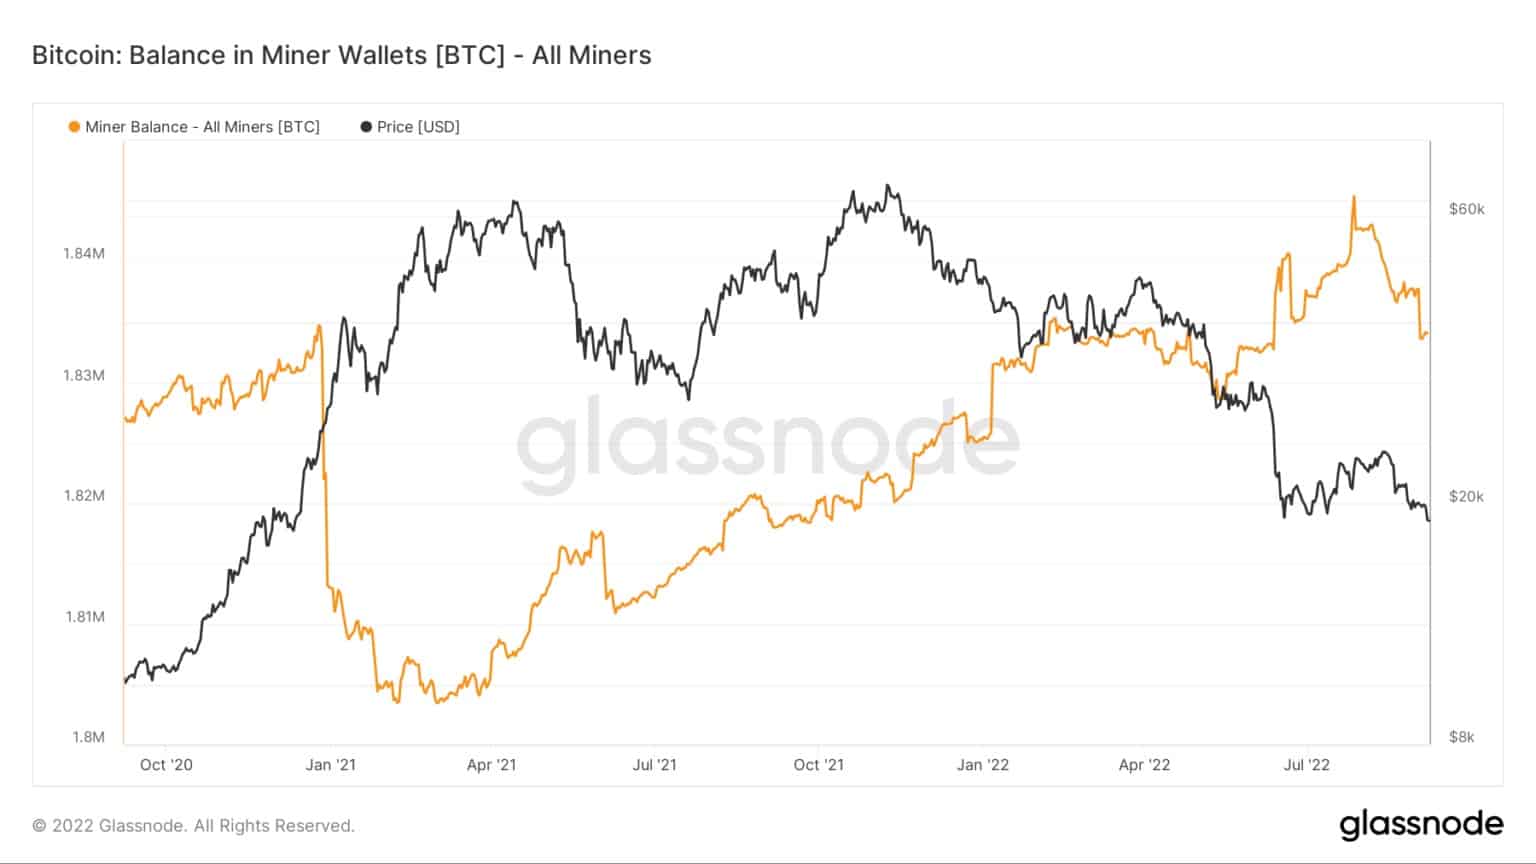 Graf zobrazující zůstatek bitcoinů v peněženkách těžařů (zdroj: Glassnode)